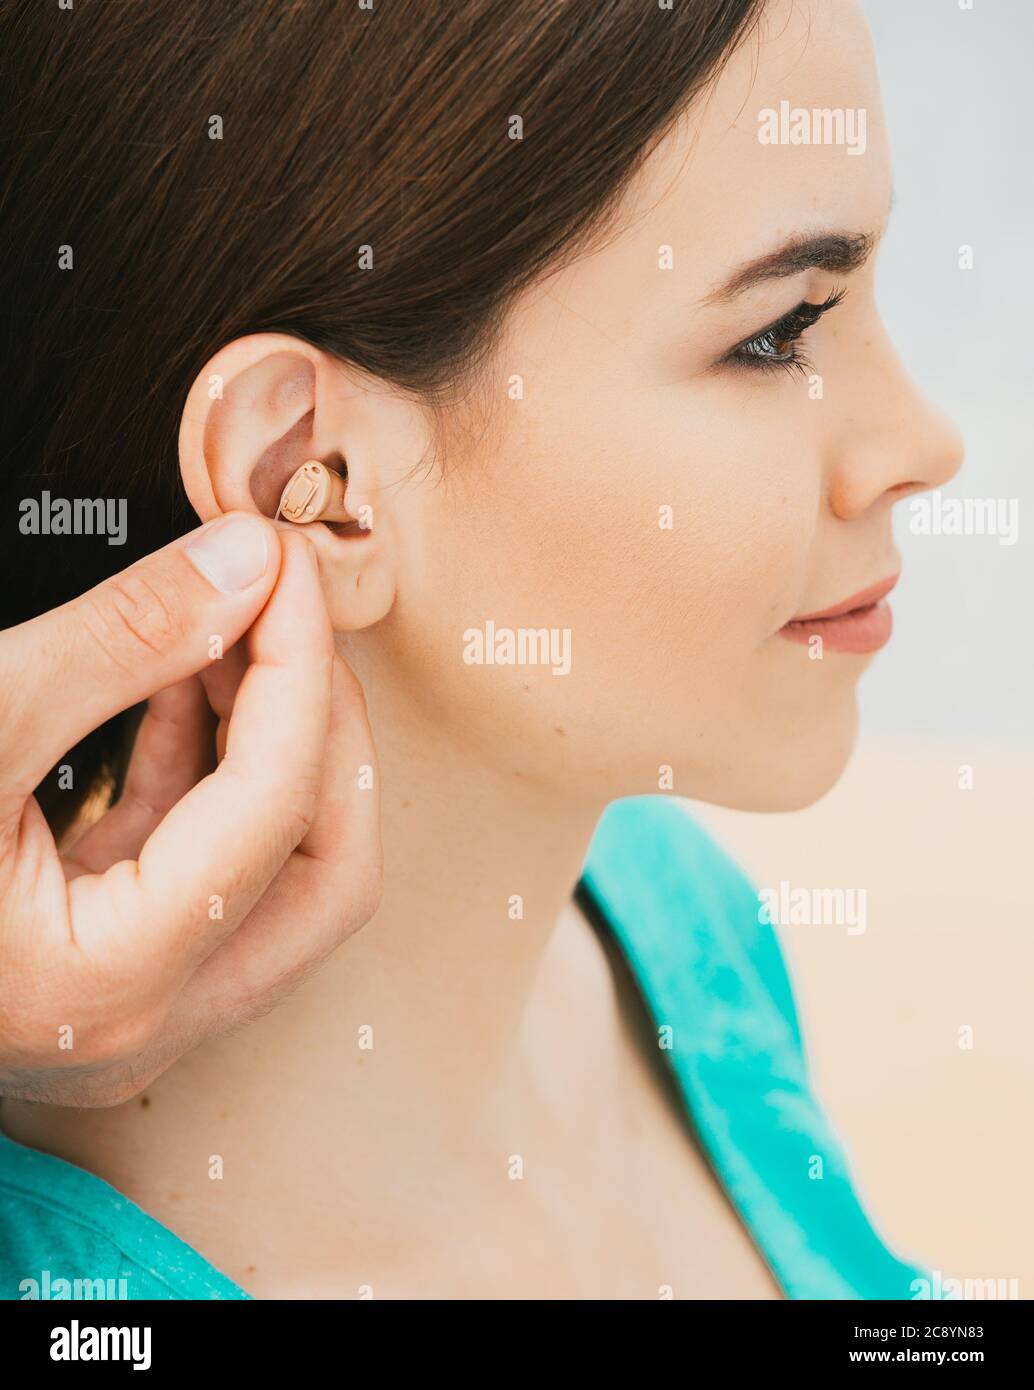 Jeune patient avec prothèse auditive intra-auriculaire, gros plan sur l'oreille féminine. La solution auditive, l'audiologiste insérant une prothèse auditive Banque D'Images